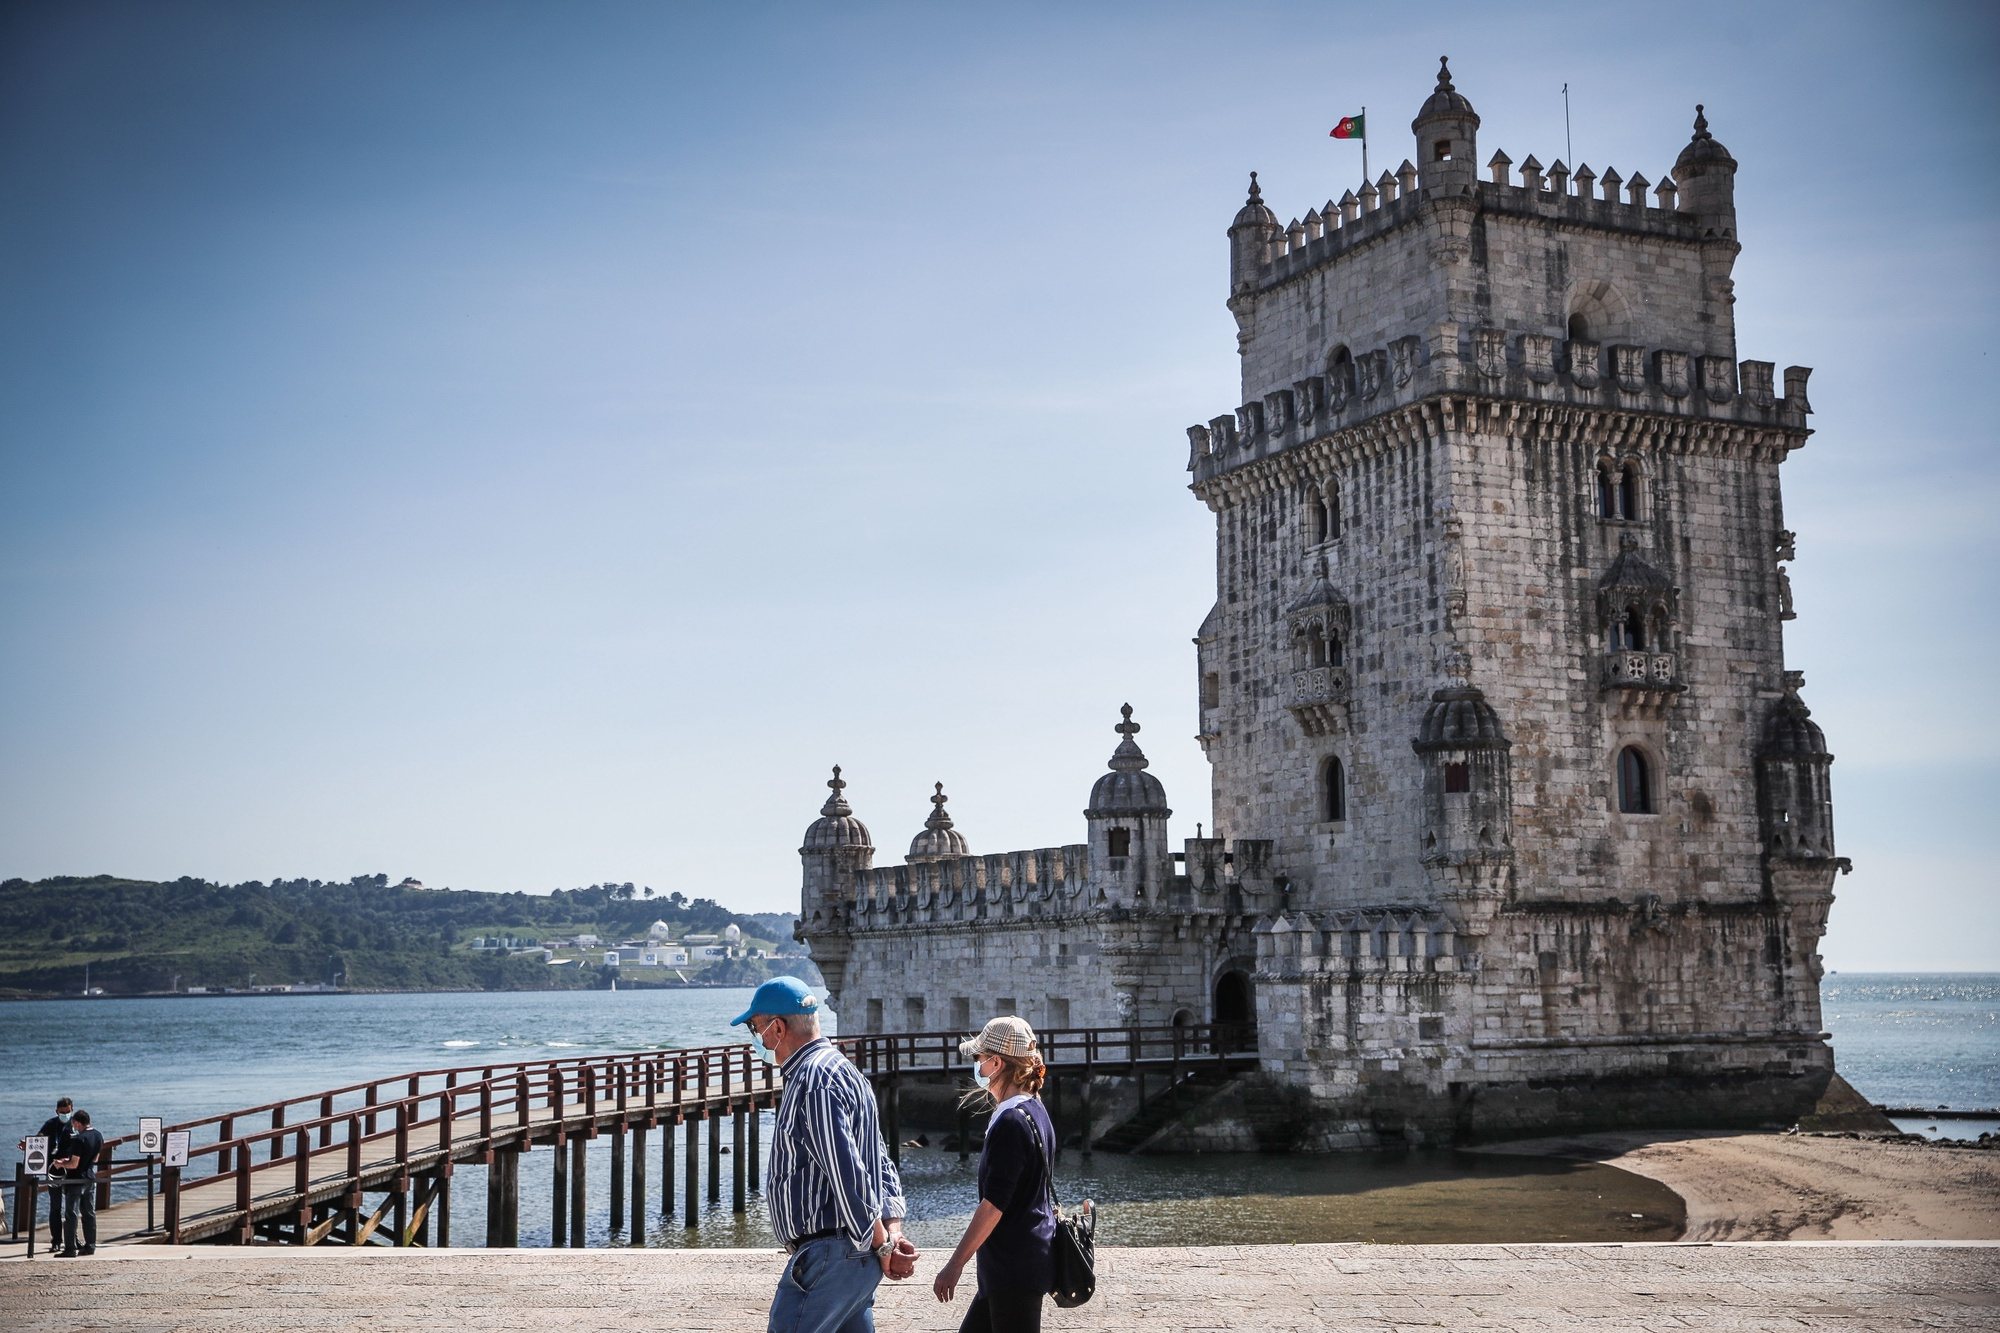 Pessoas visitam a Torre de Belém por ocasião da reabertura ao público no Dia Internacional dos Museus,  em Lisboa, 18 de maio de 2020. Os espaços museológicos, palácios, monumentos nacionais e galerias de arte estavam encerrados desde 14 de março devido á pandemia da covid-19. MÁRIO CRUZ/LUSA